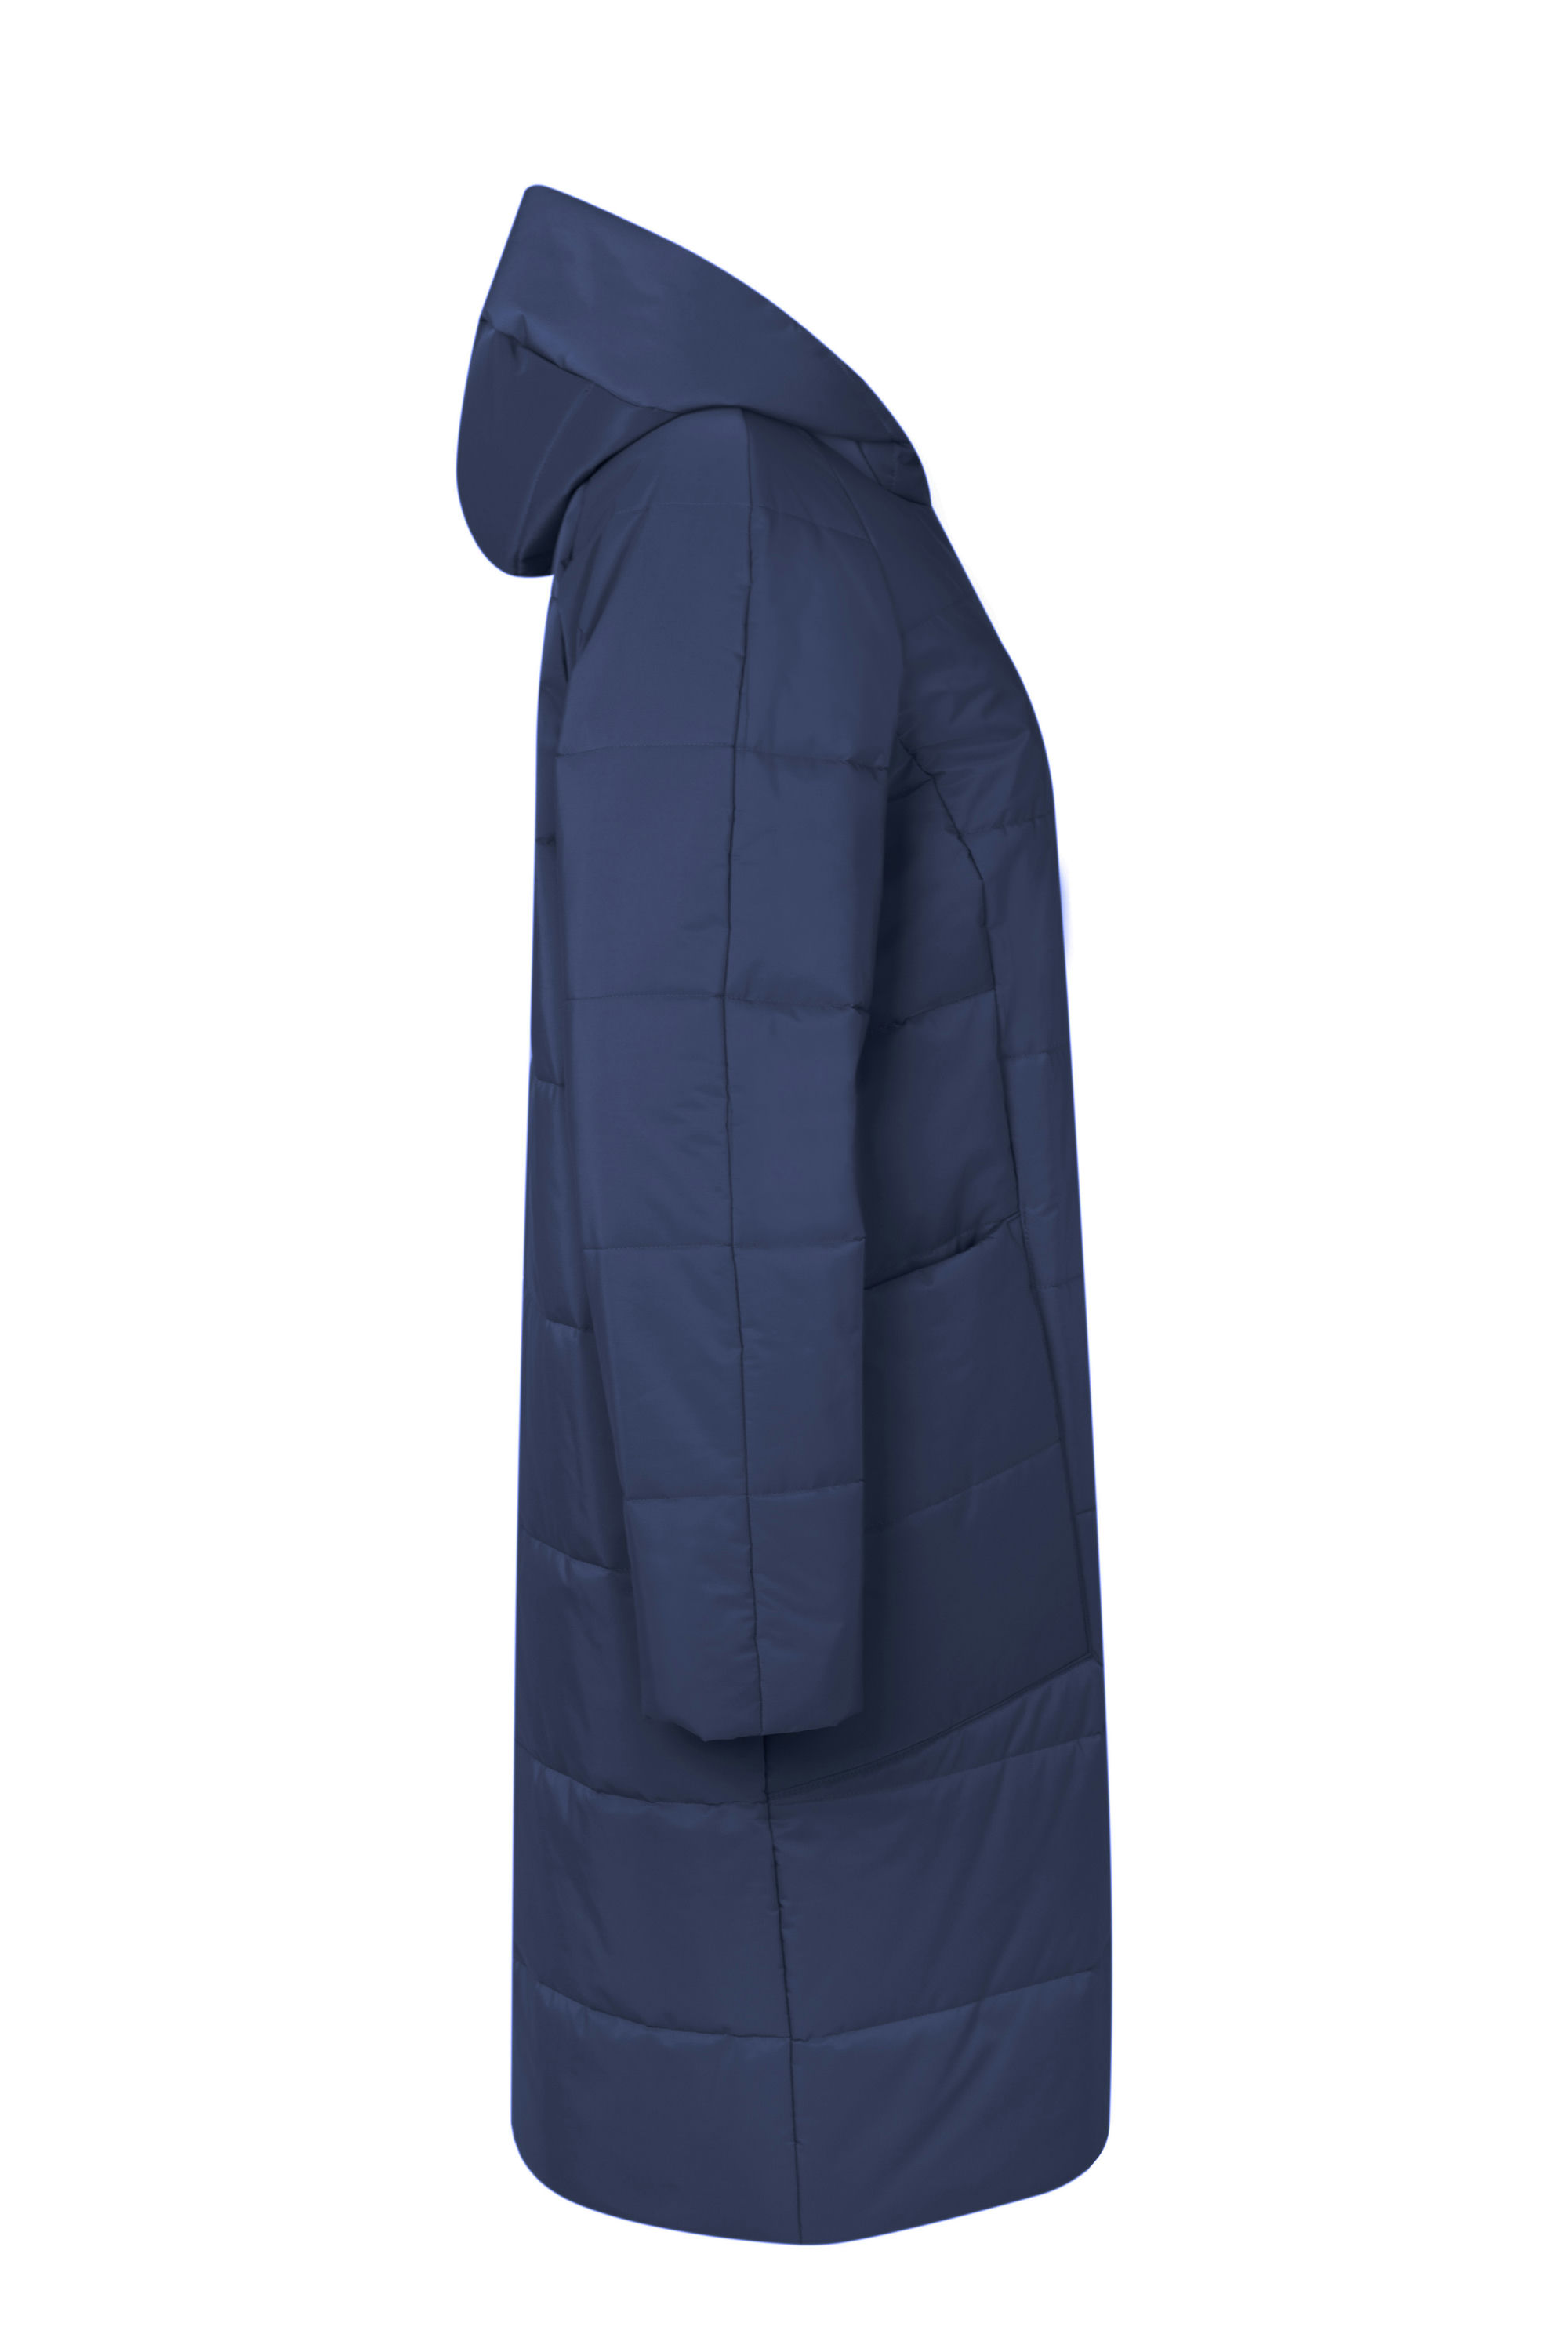 Пальто женское плащевое утепленное 5-12590-1